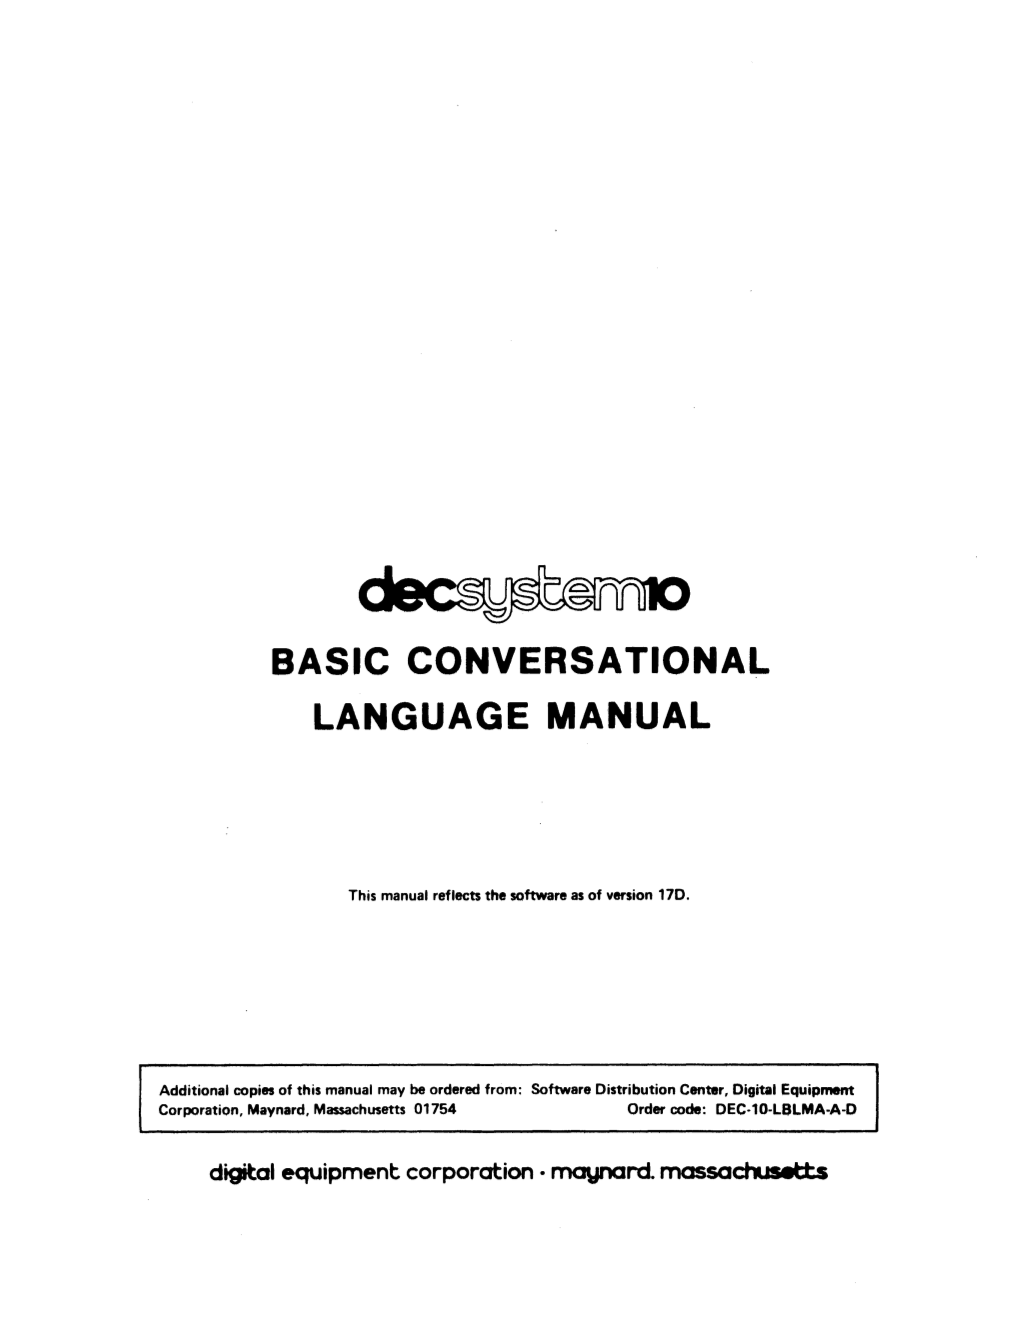 Basic Conversational Language Manual